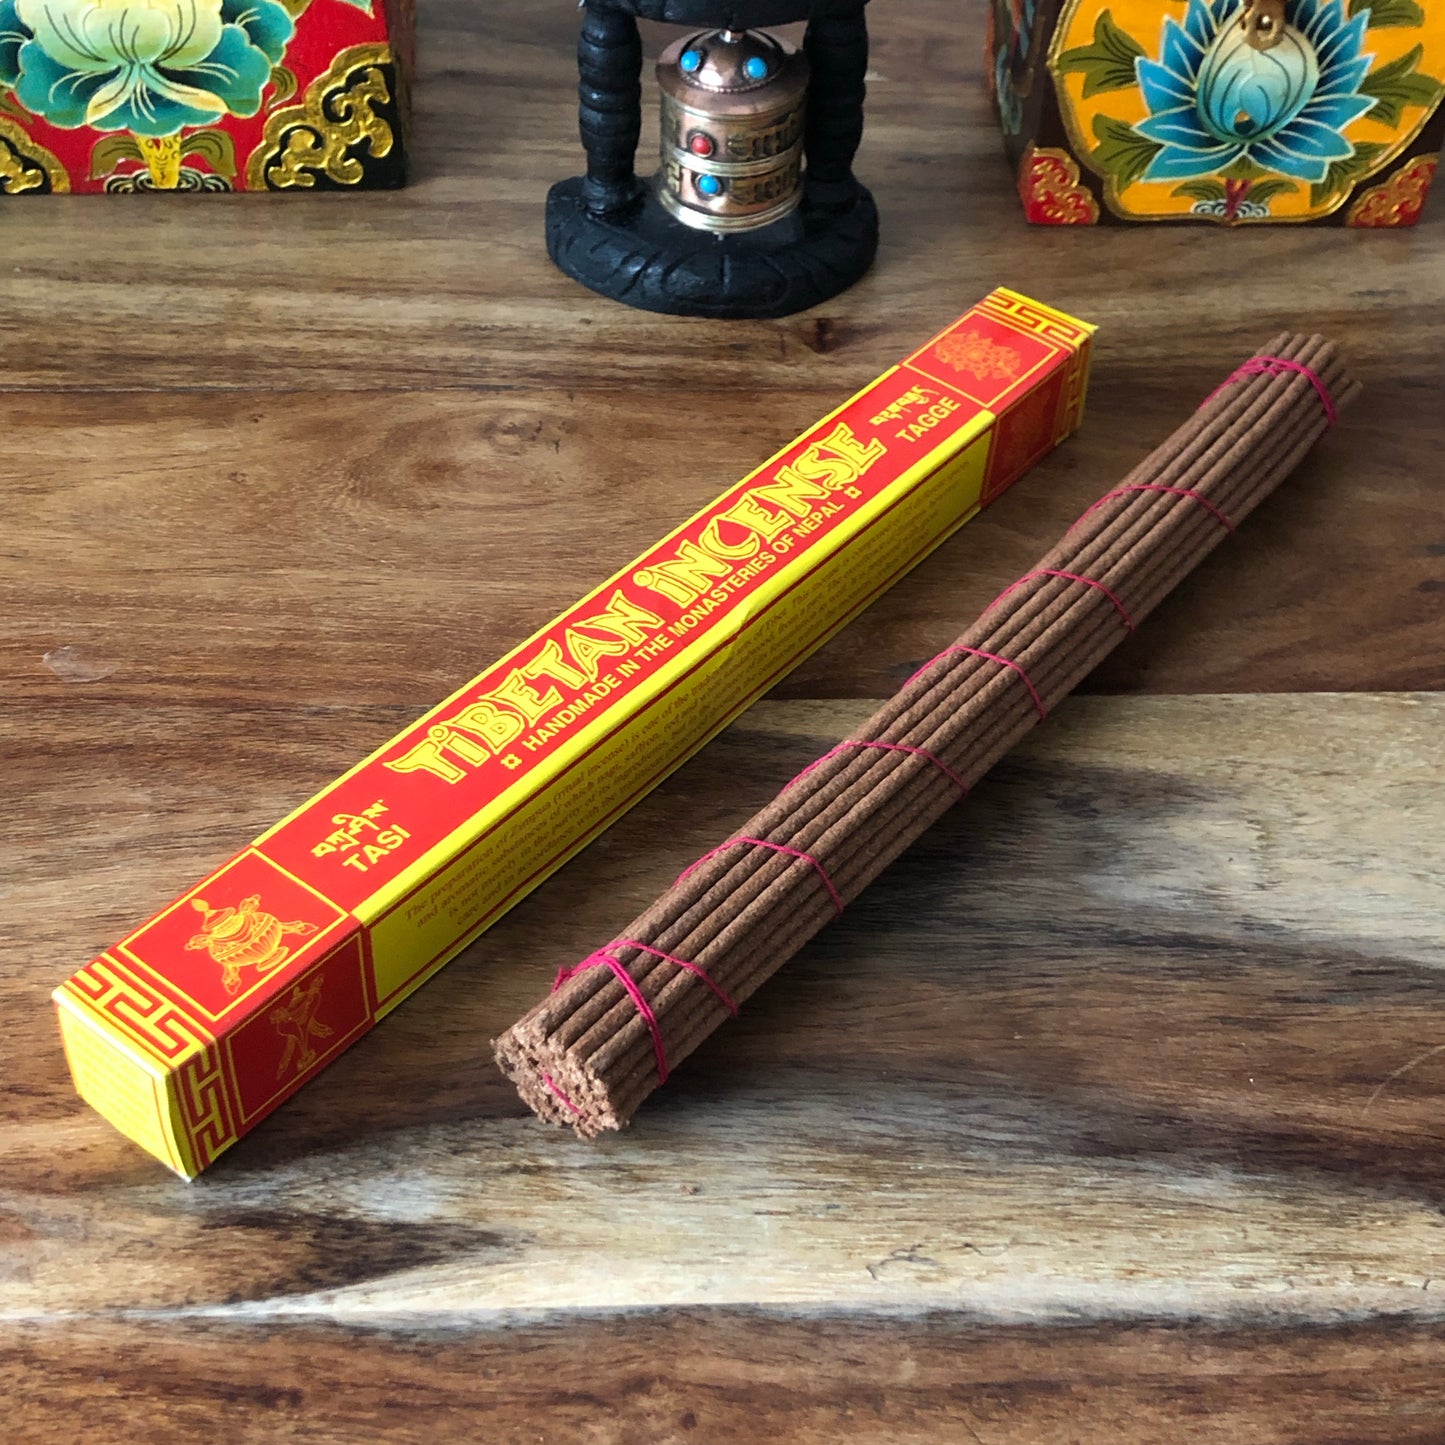 Tasi Taggi Tibetan Incense